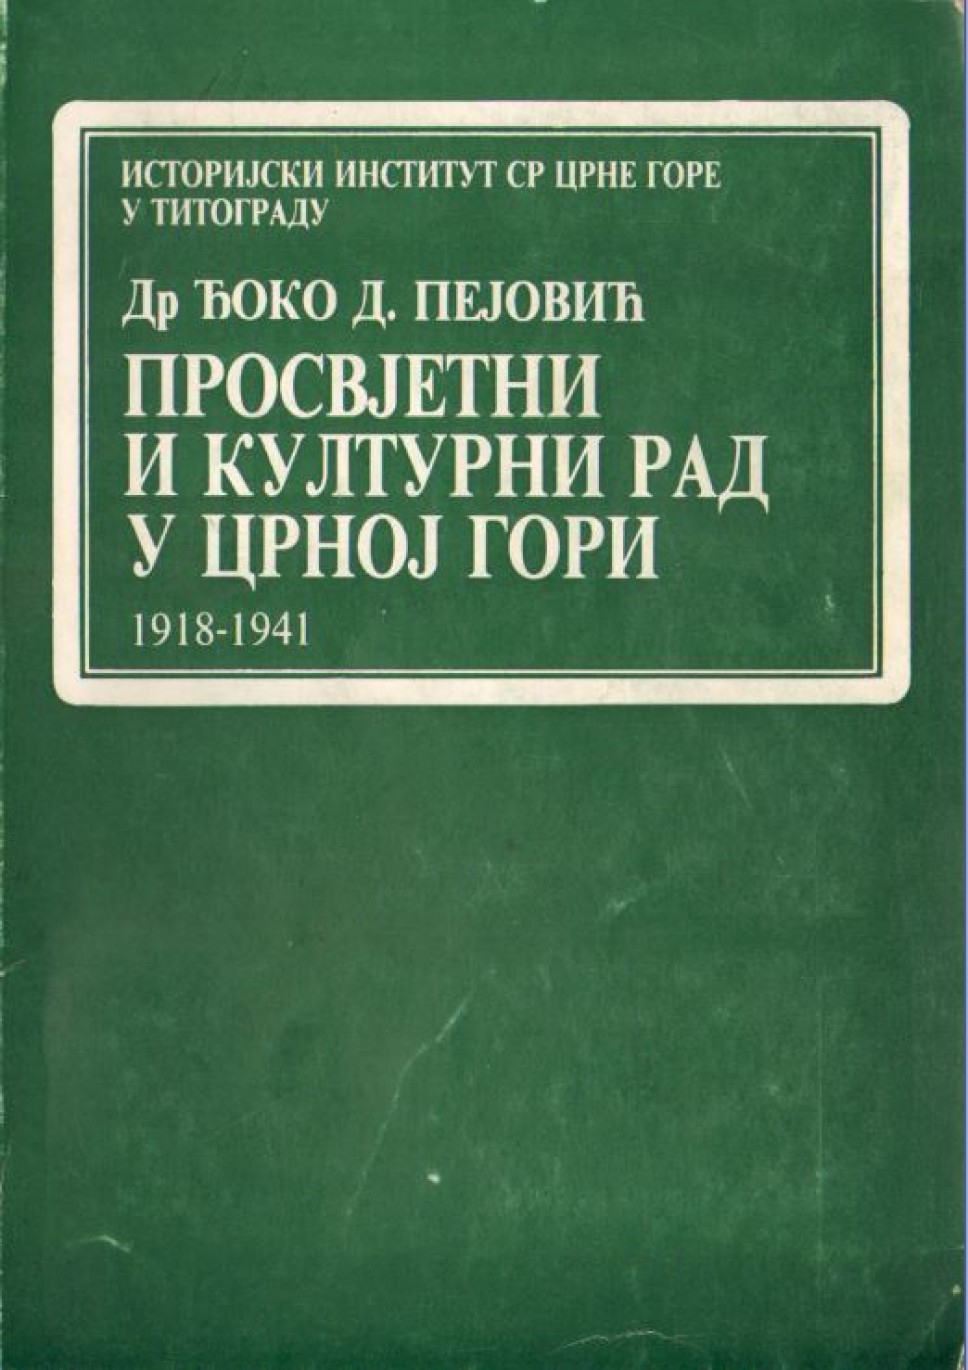 Prosvjetni i kulturni rad u Crnoj Gori 1918-1941